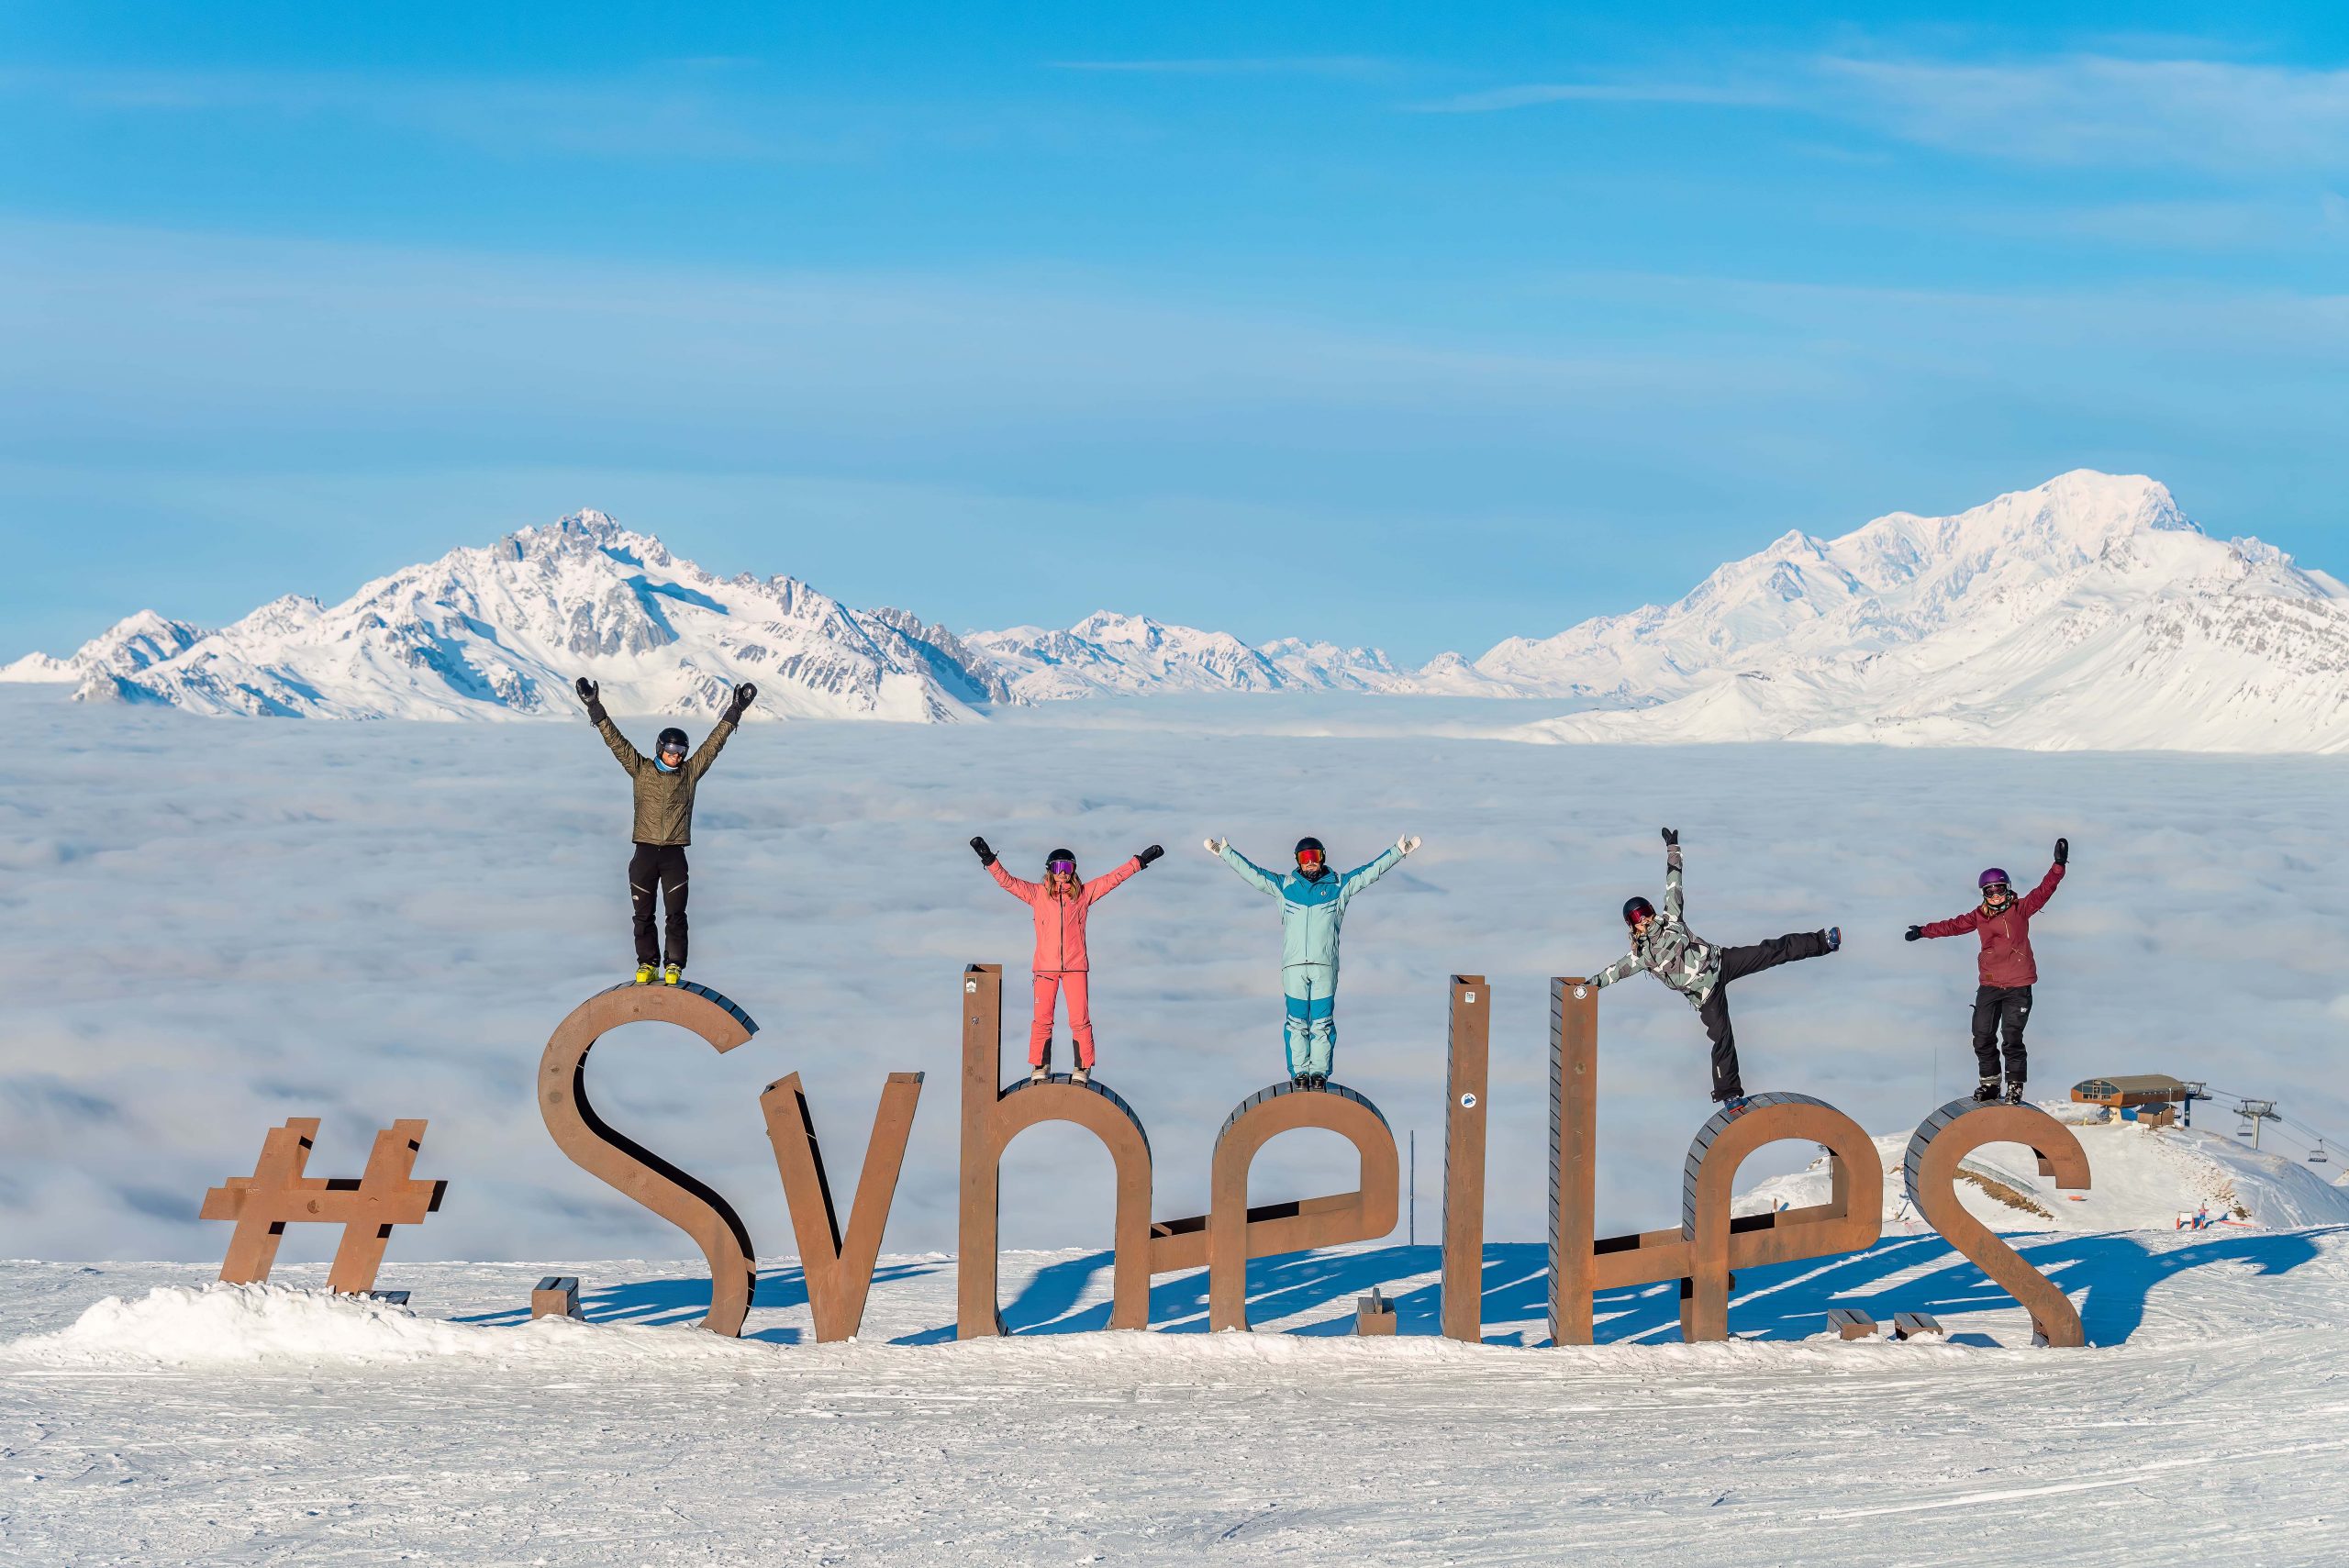 Top 10 tenues de ski insolites- Travelski